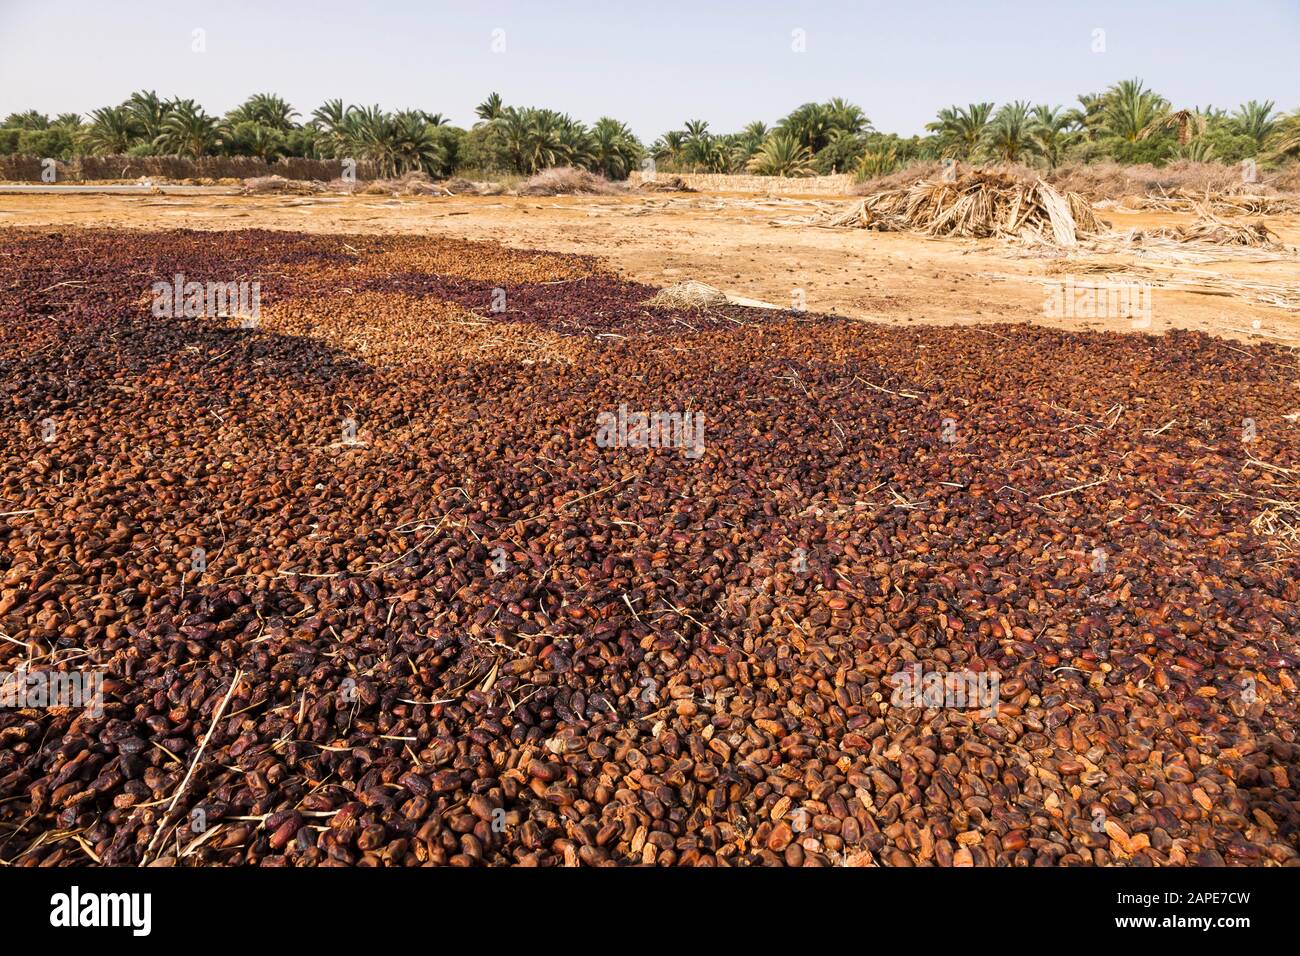 Jujube seco, en los campos de palma, granja agrícola, producto especial, Siwa Oasis, Siwa, Egipto, África del Norte, África Foto de stock